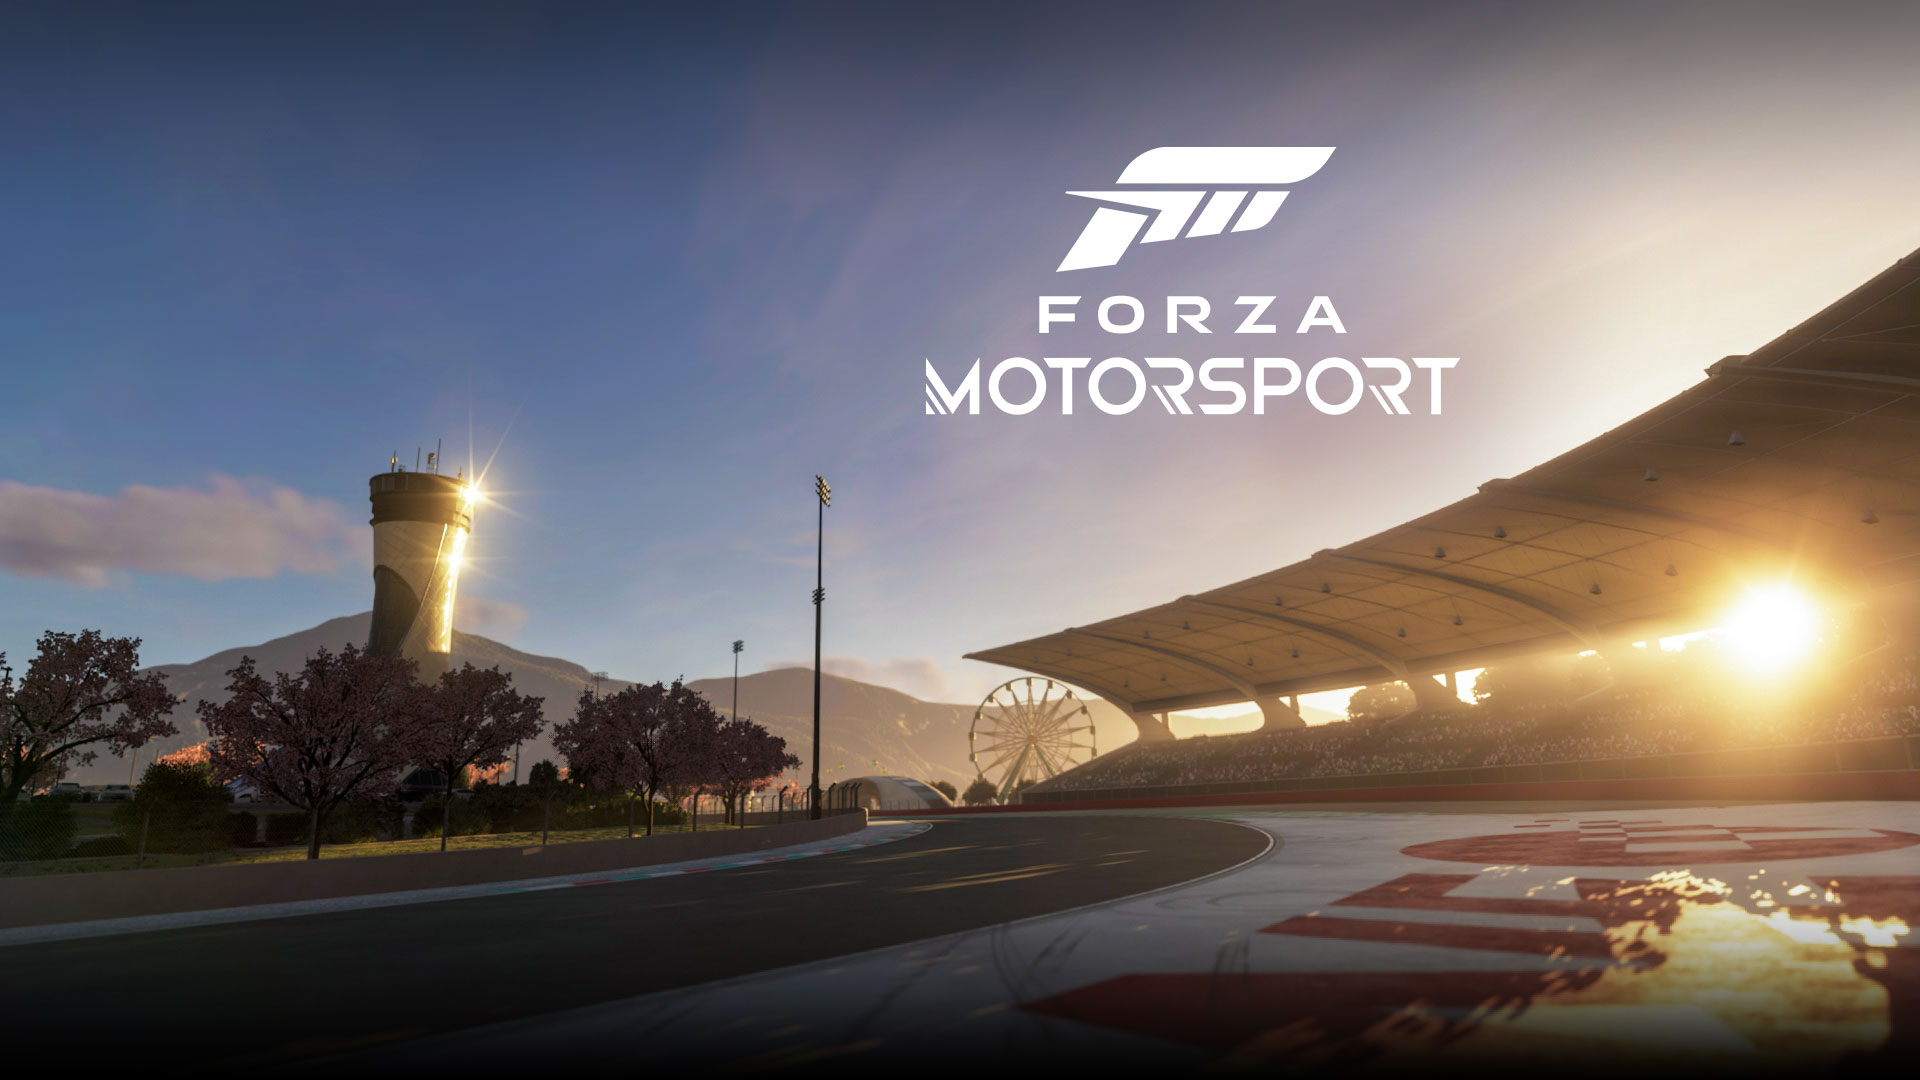 Forza Motorsport, zapadající slunce svítí nad závodní dráhou.